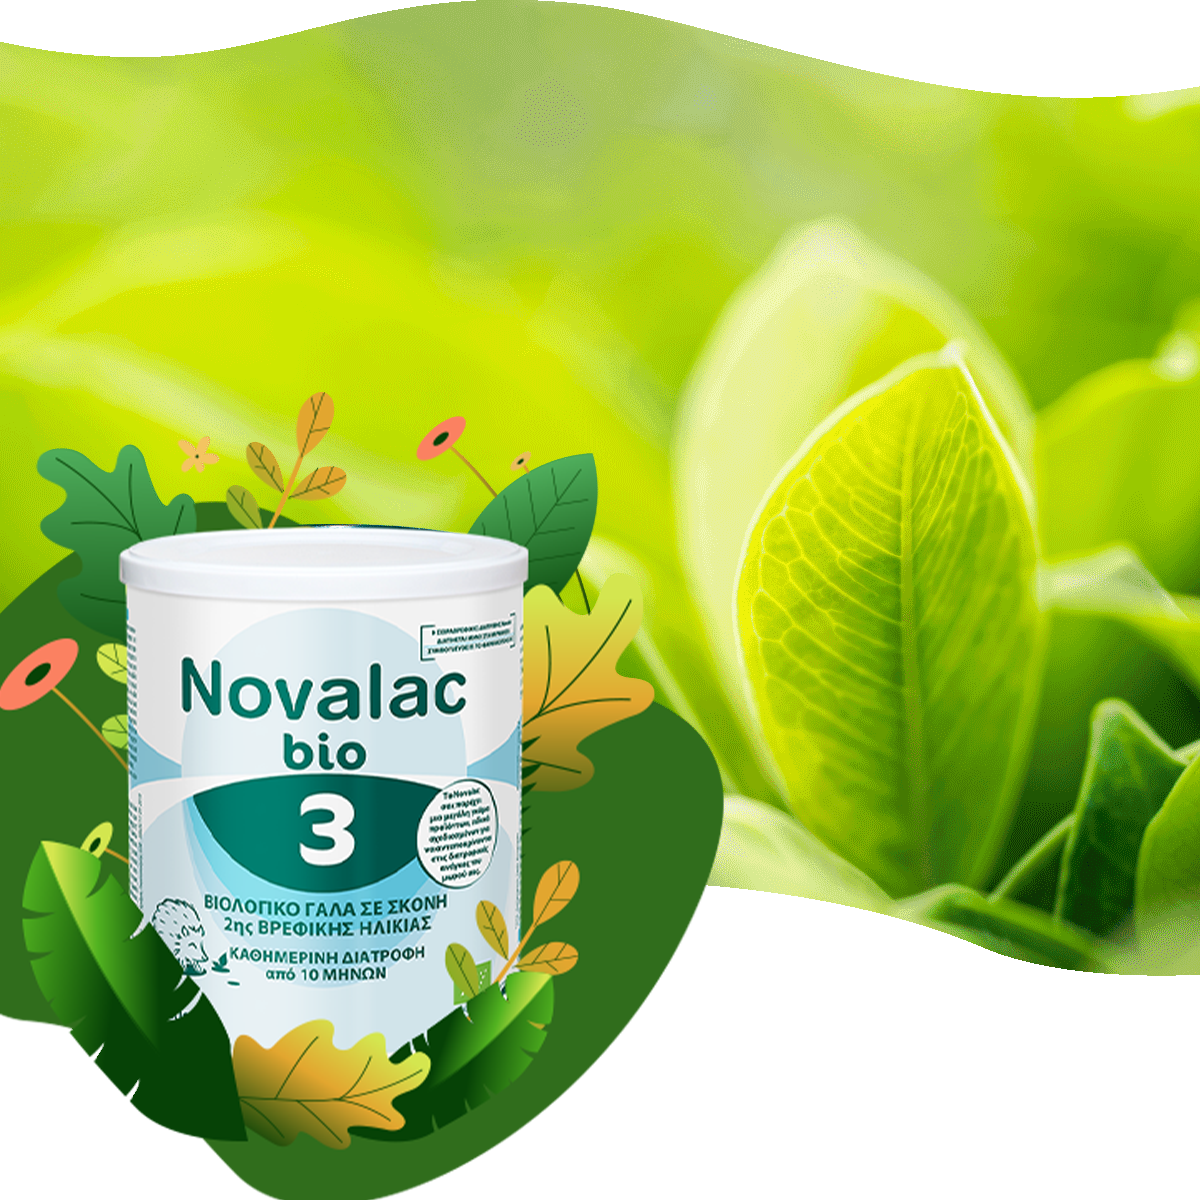 Γιατί να επιλέξω Novalac bio 